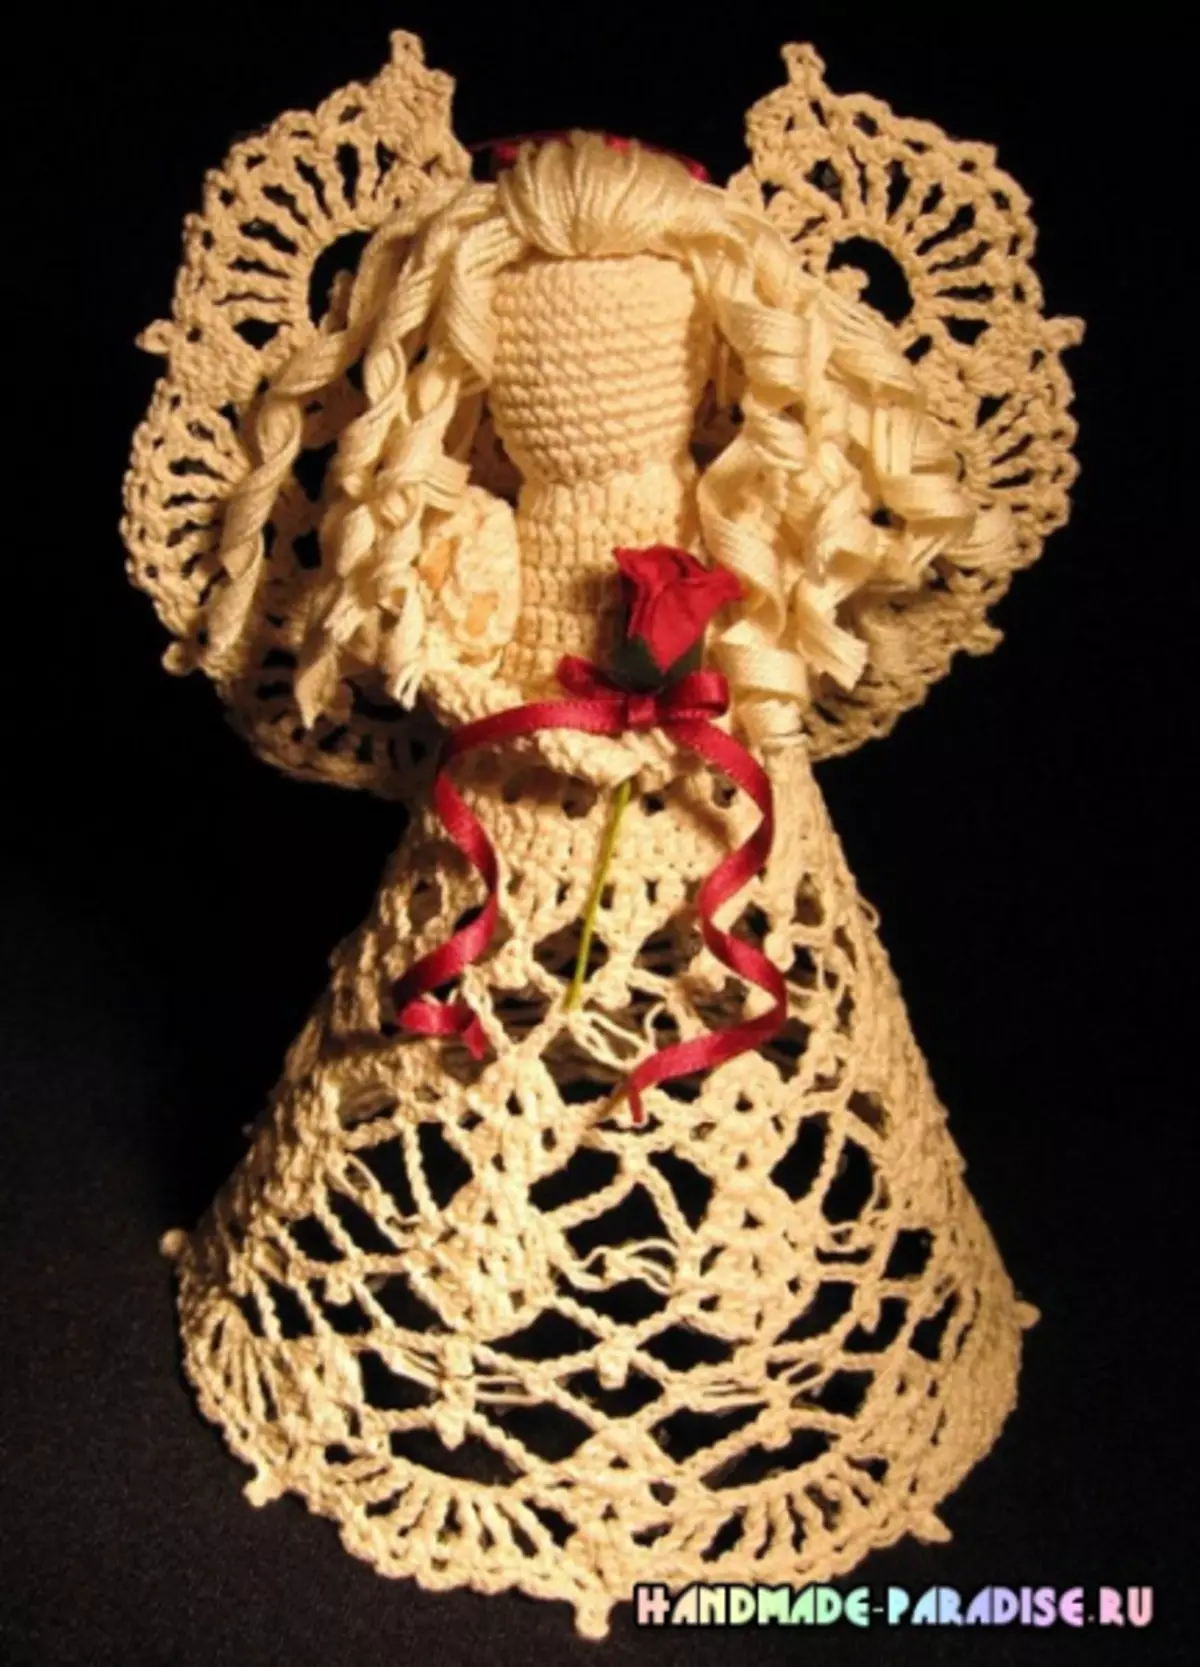 ಕ್ರಿಸ್ಮಸ್ ಓಪನ್ವರ್ಕ್ ಏಂಜಲ್ಸ್ Crochet. ಕಲ್ಪನೆಗಳು